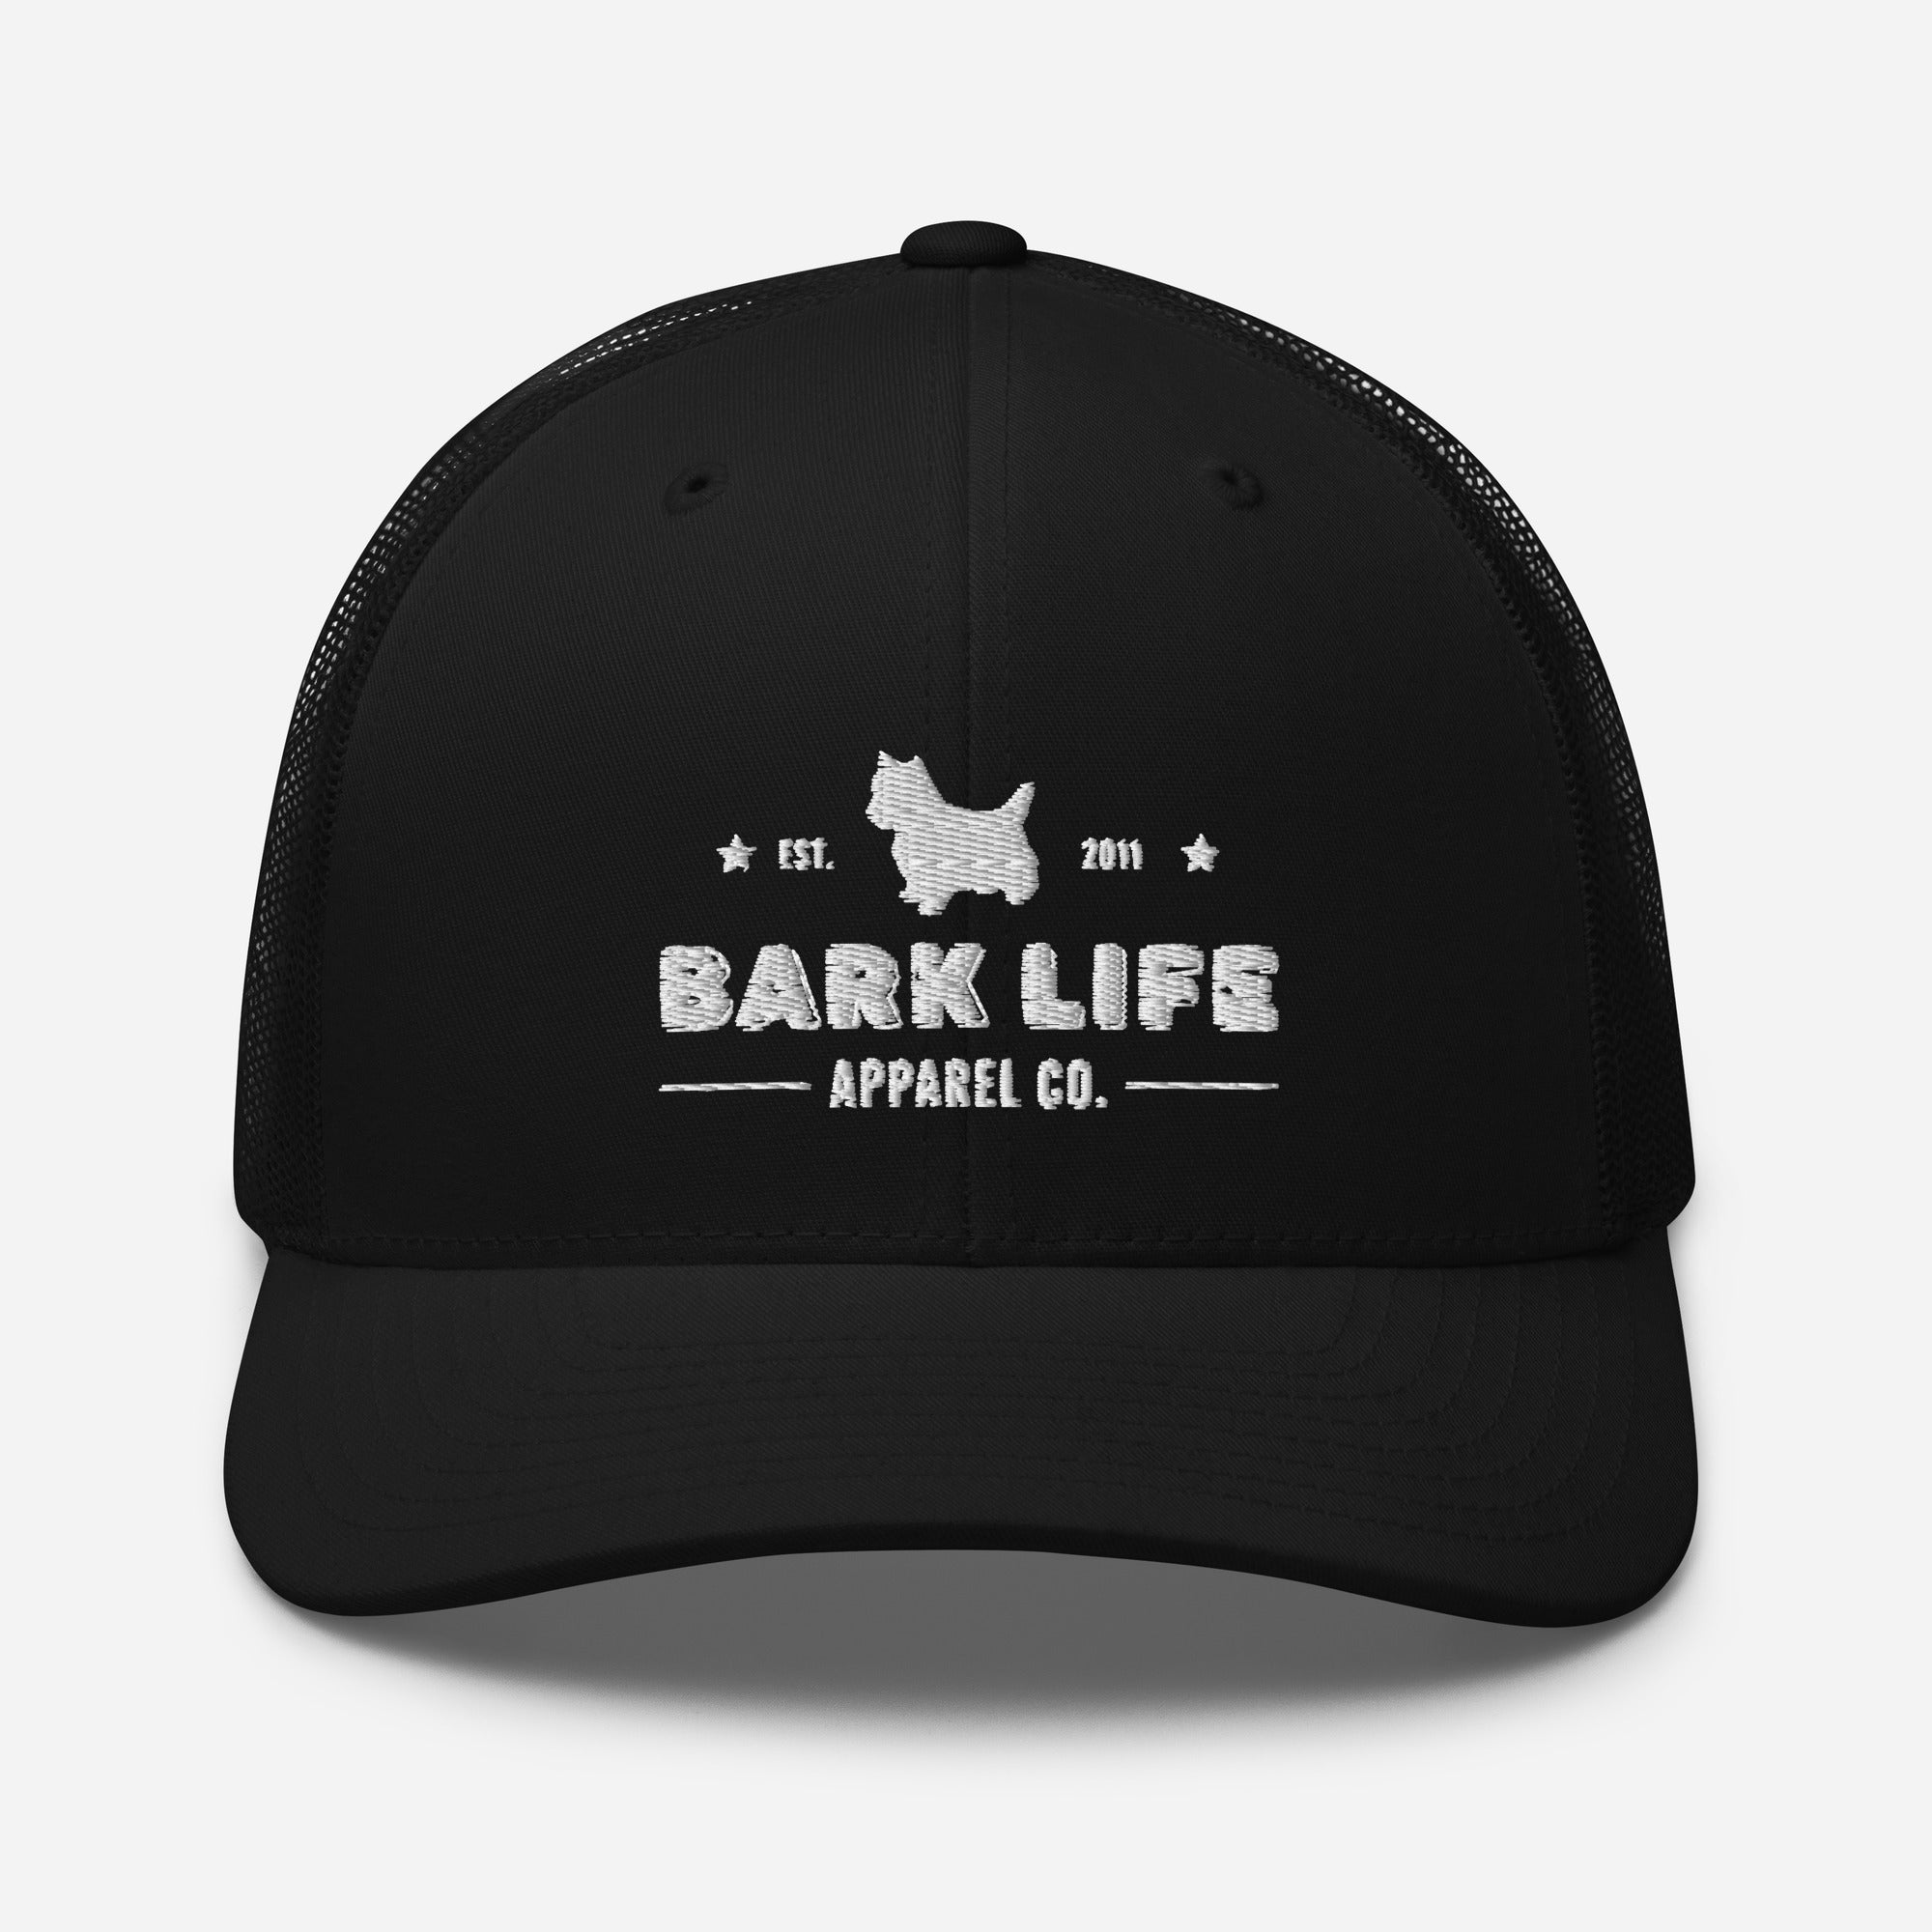 West Highland Terrier - Hat